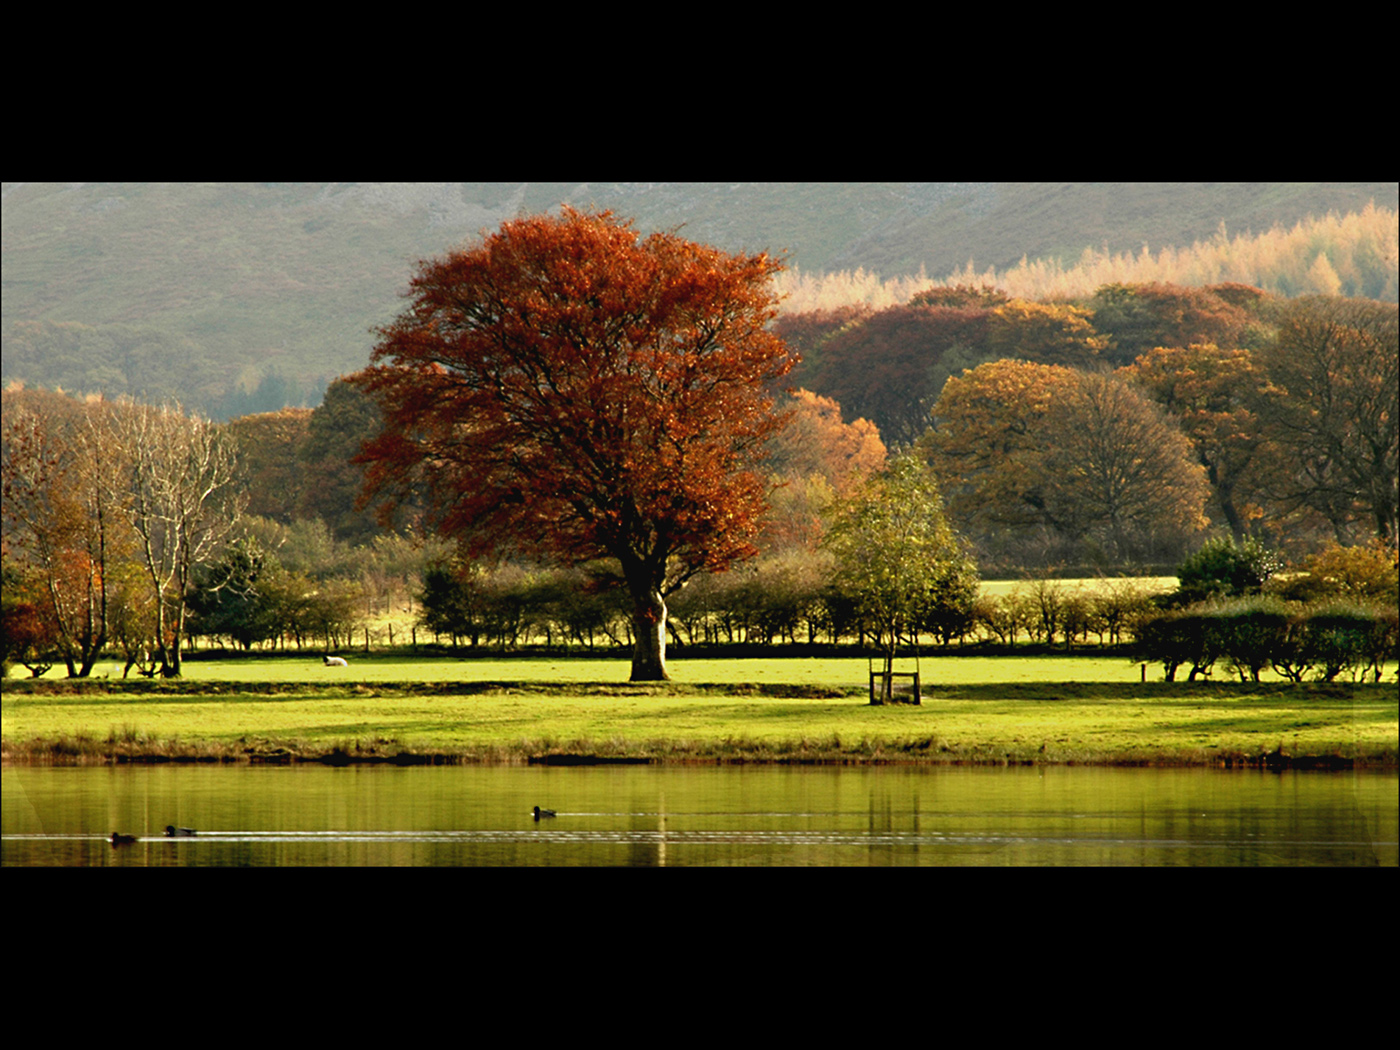 Alan Green_Borrowdale Valley Landscape